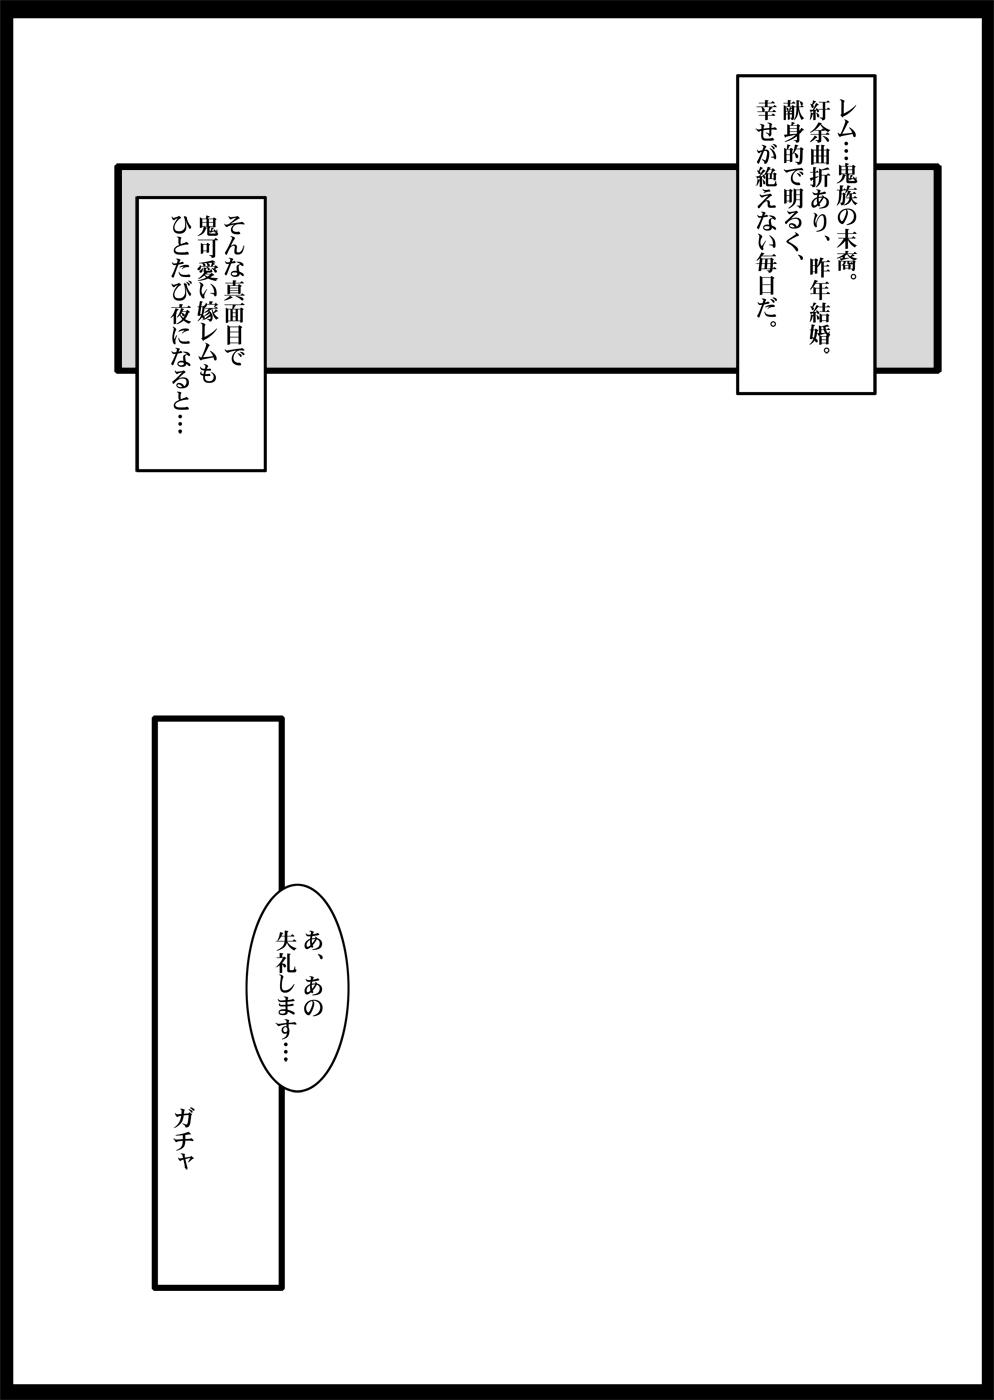 Tamanokoshi Zenbu Tsume 2001 ~ 2022 Venue Limited Edition 66